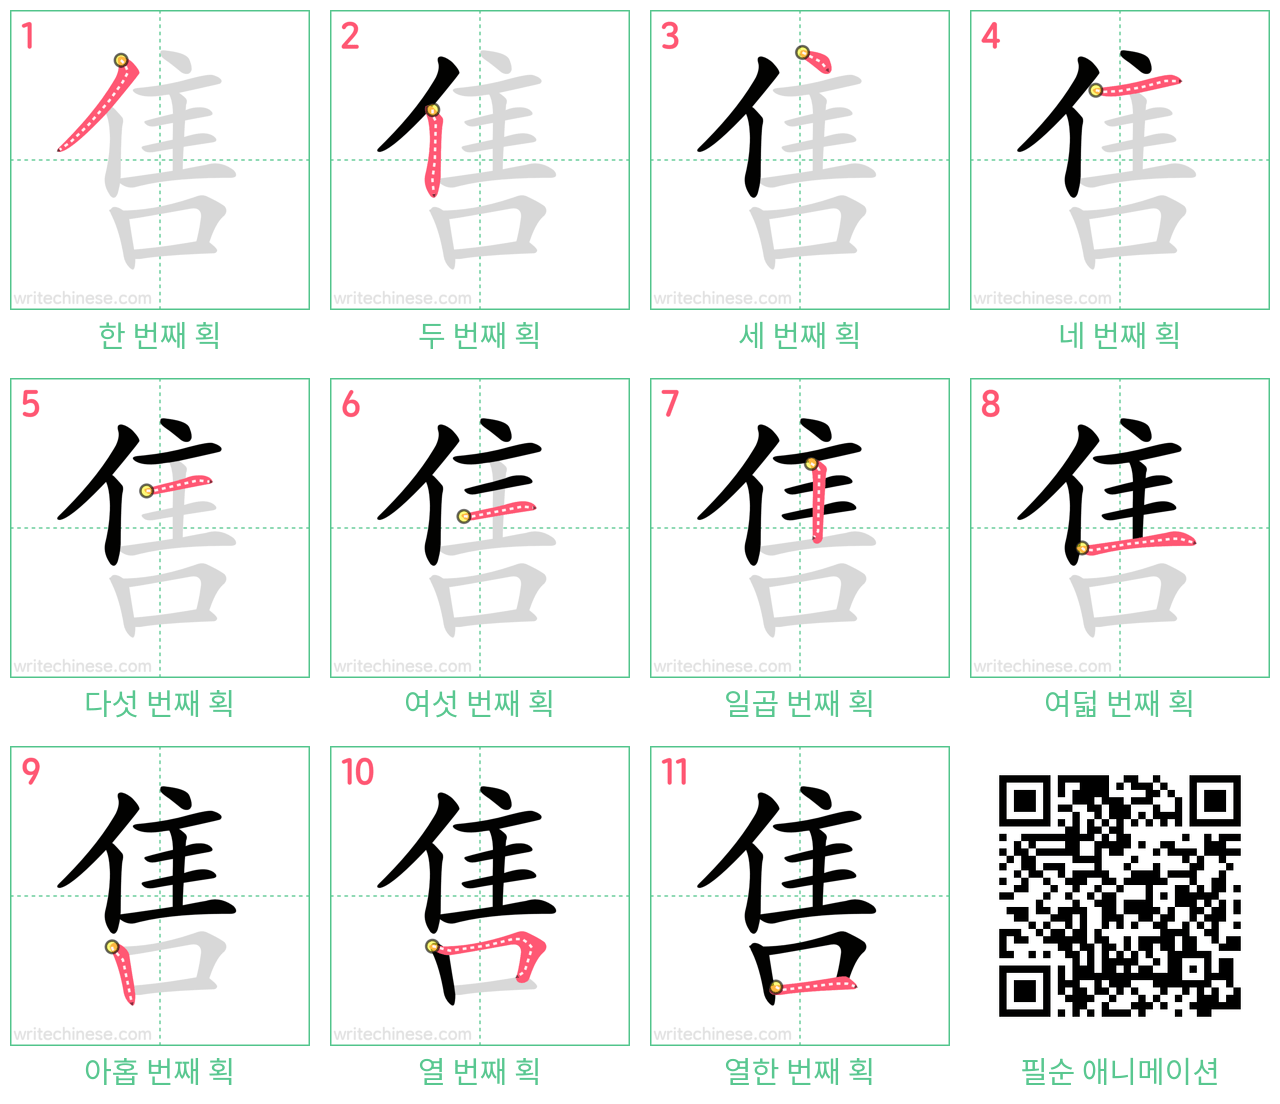 售 step-by-step stroke order diagrams